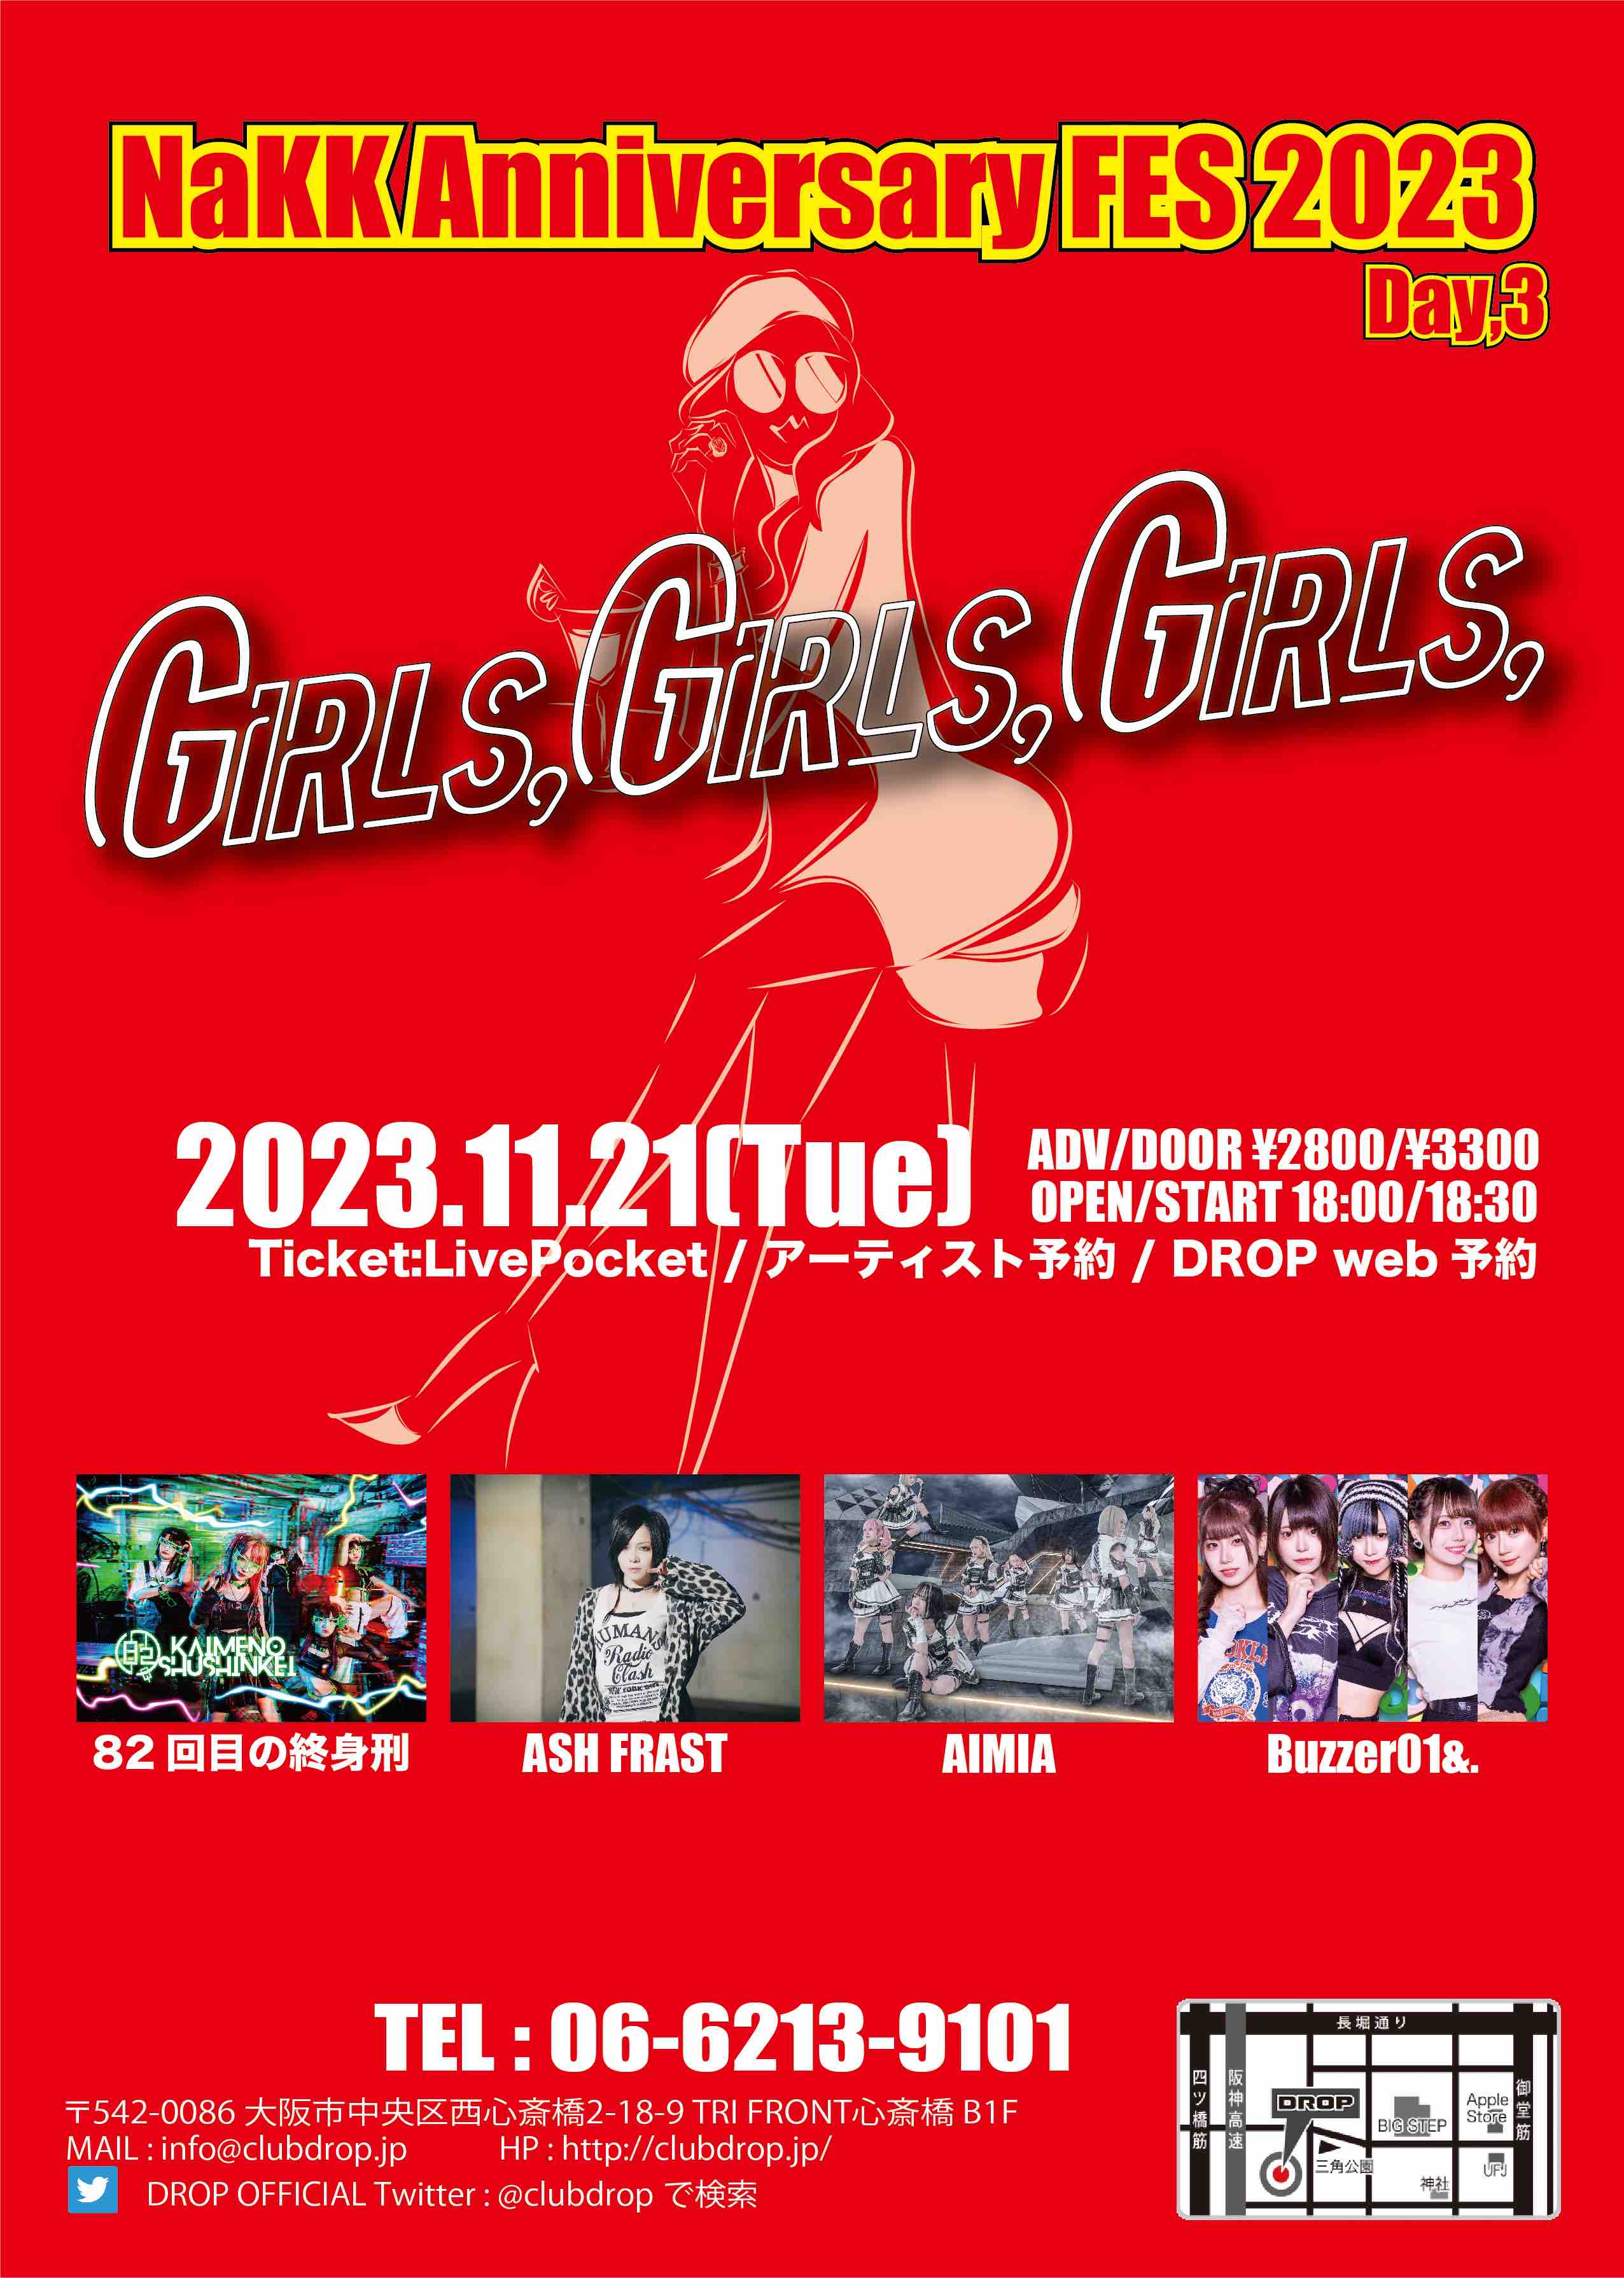 Girls,Girls,Girls, -NaKK Anniversary FES 2023- Day3